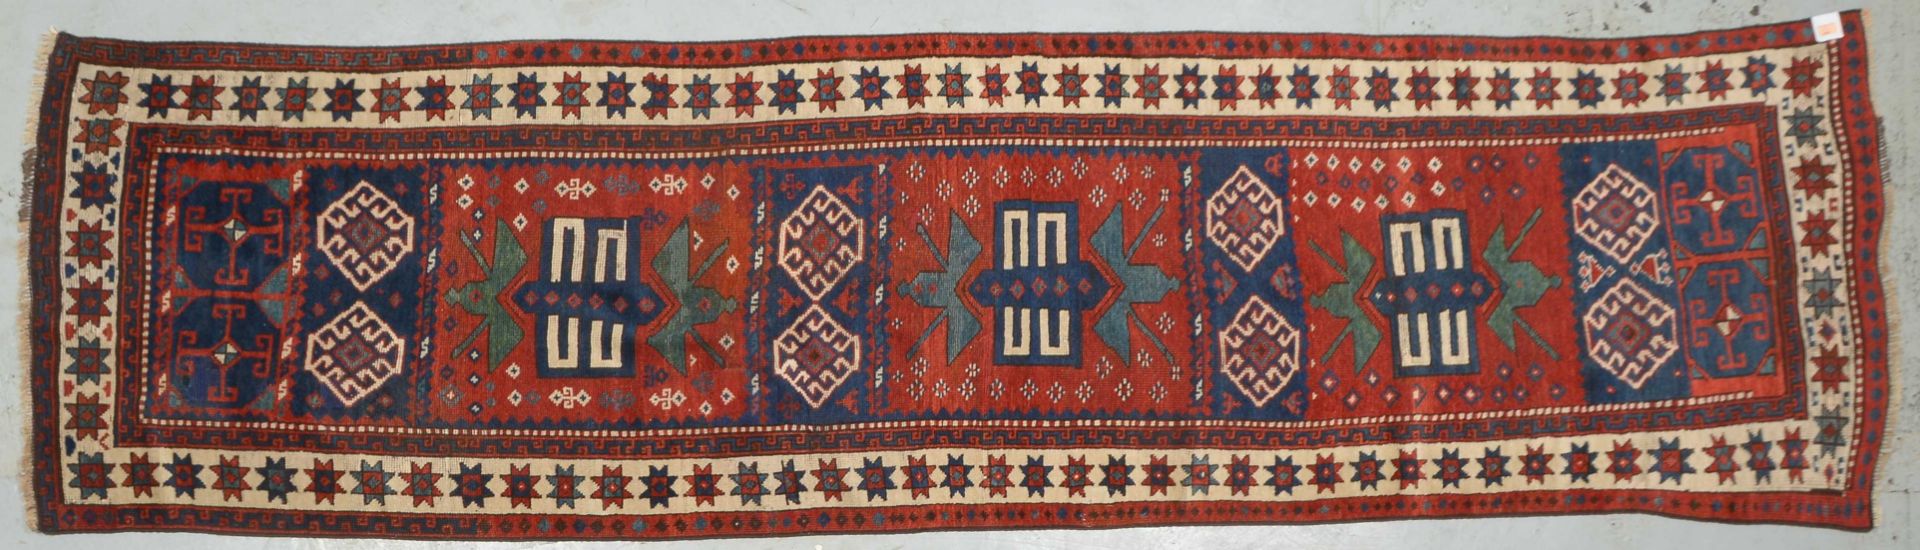 Kaukasische Galerie, antik, Wolle auf Wolle, kontrastreiche Pflanzenfarben, neu festoniert, Flor in  - Bild 2 aus 4